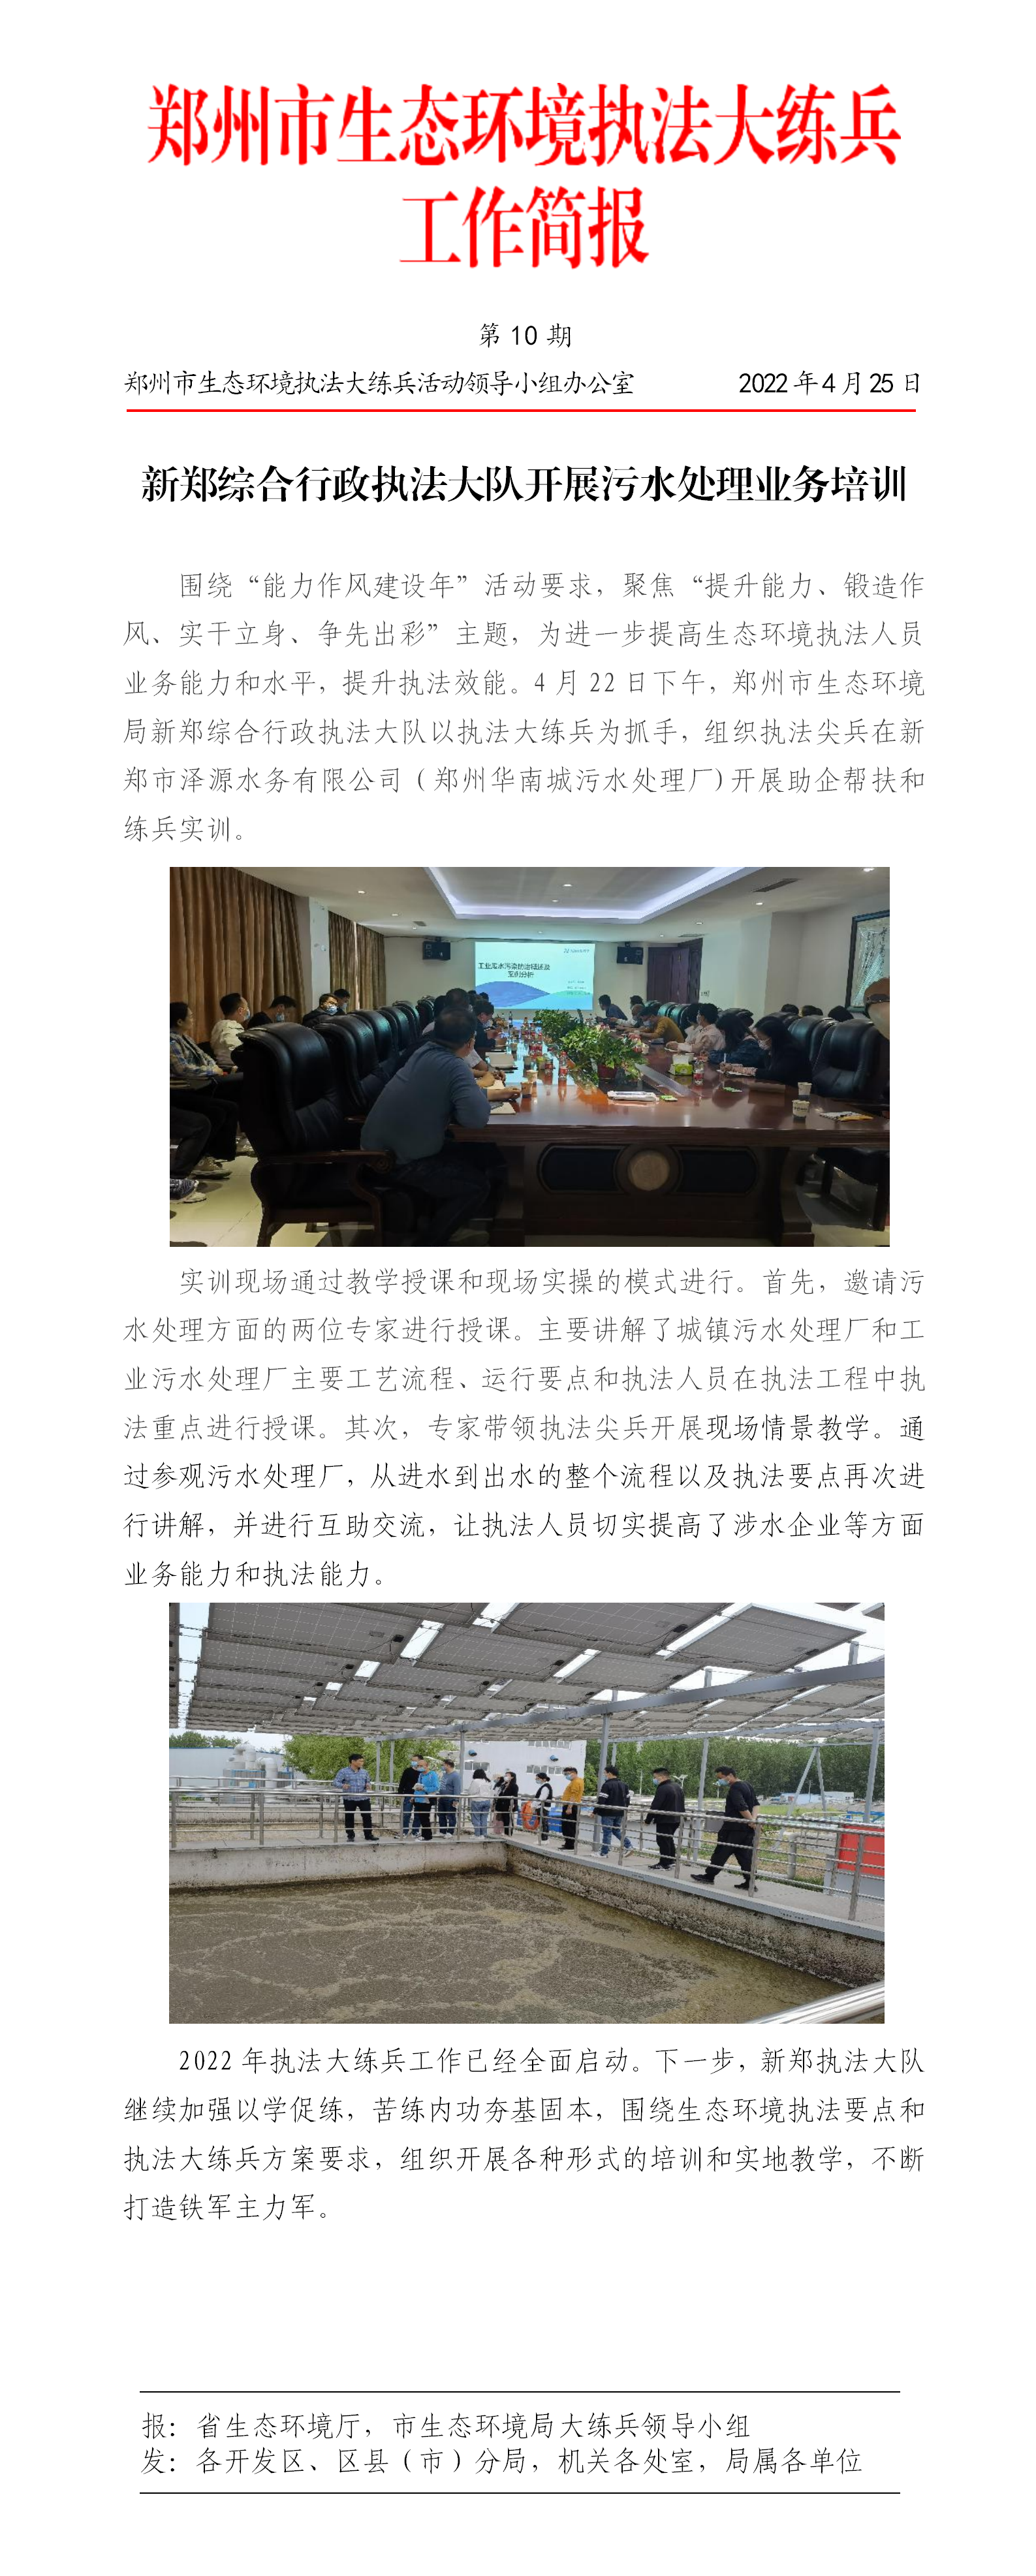 第10期  新郑综合行政执法大队开展污水处理业务培训_01.png